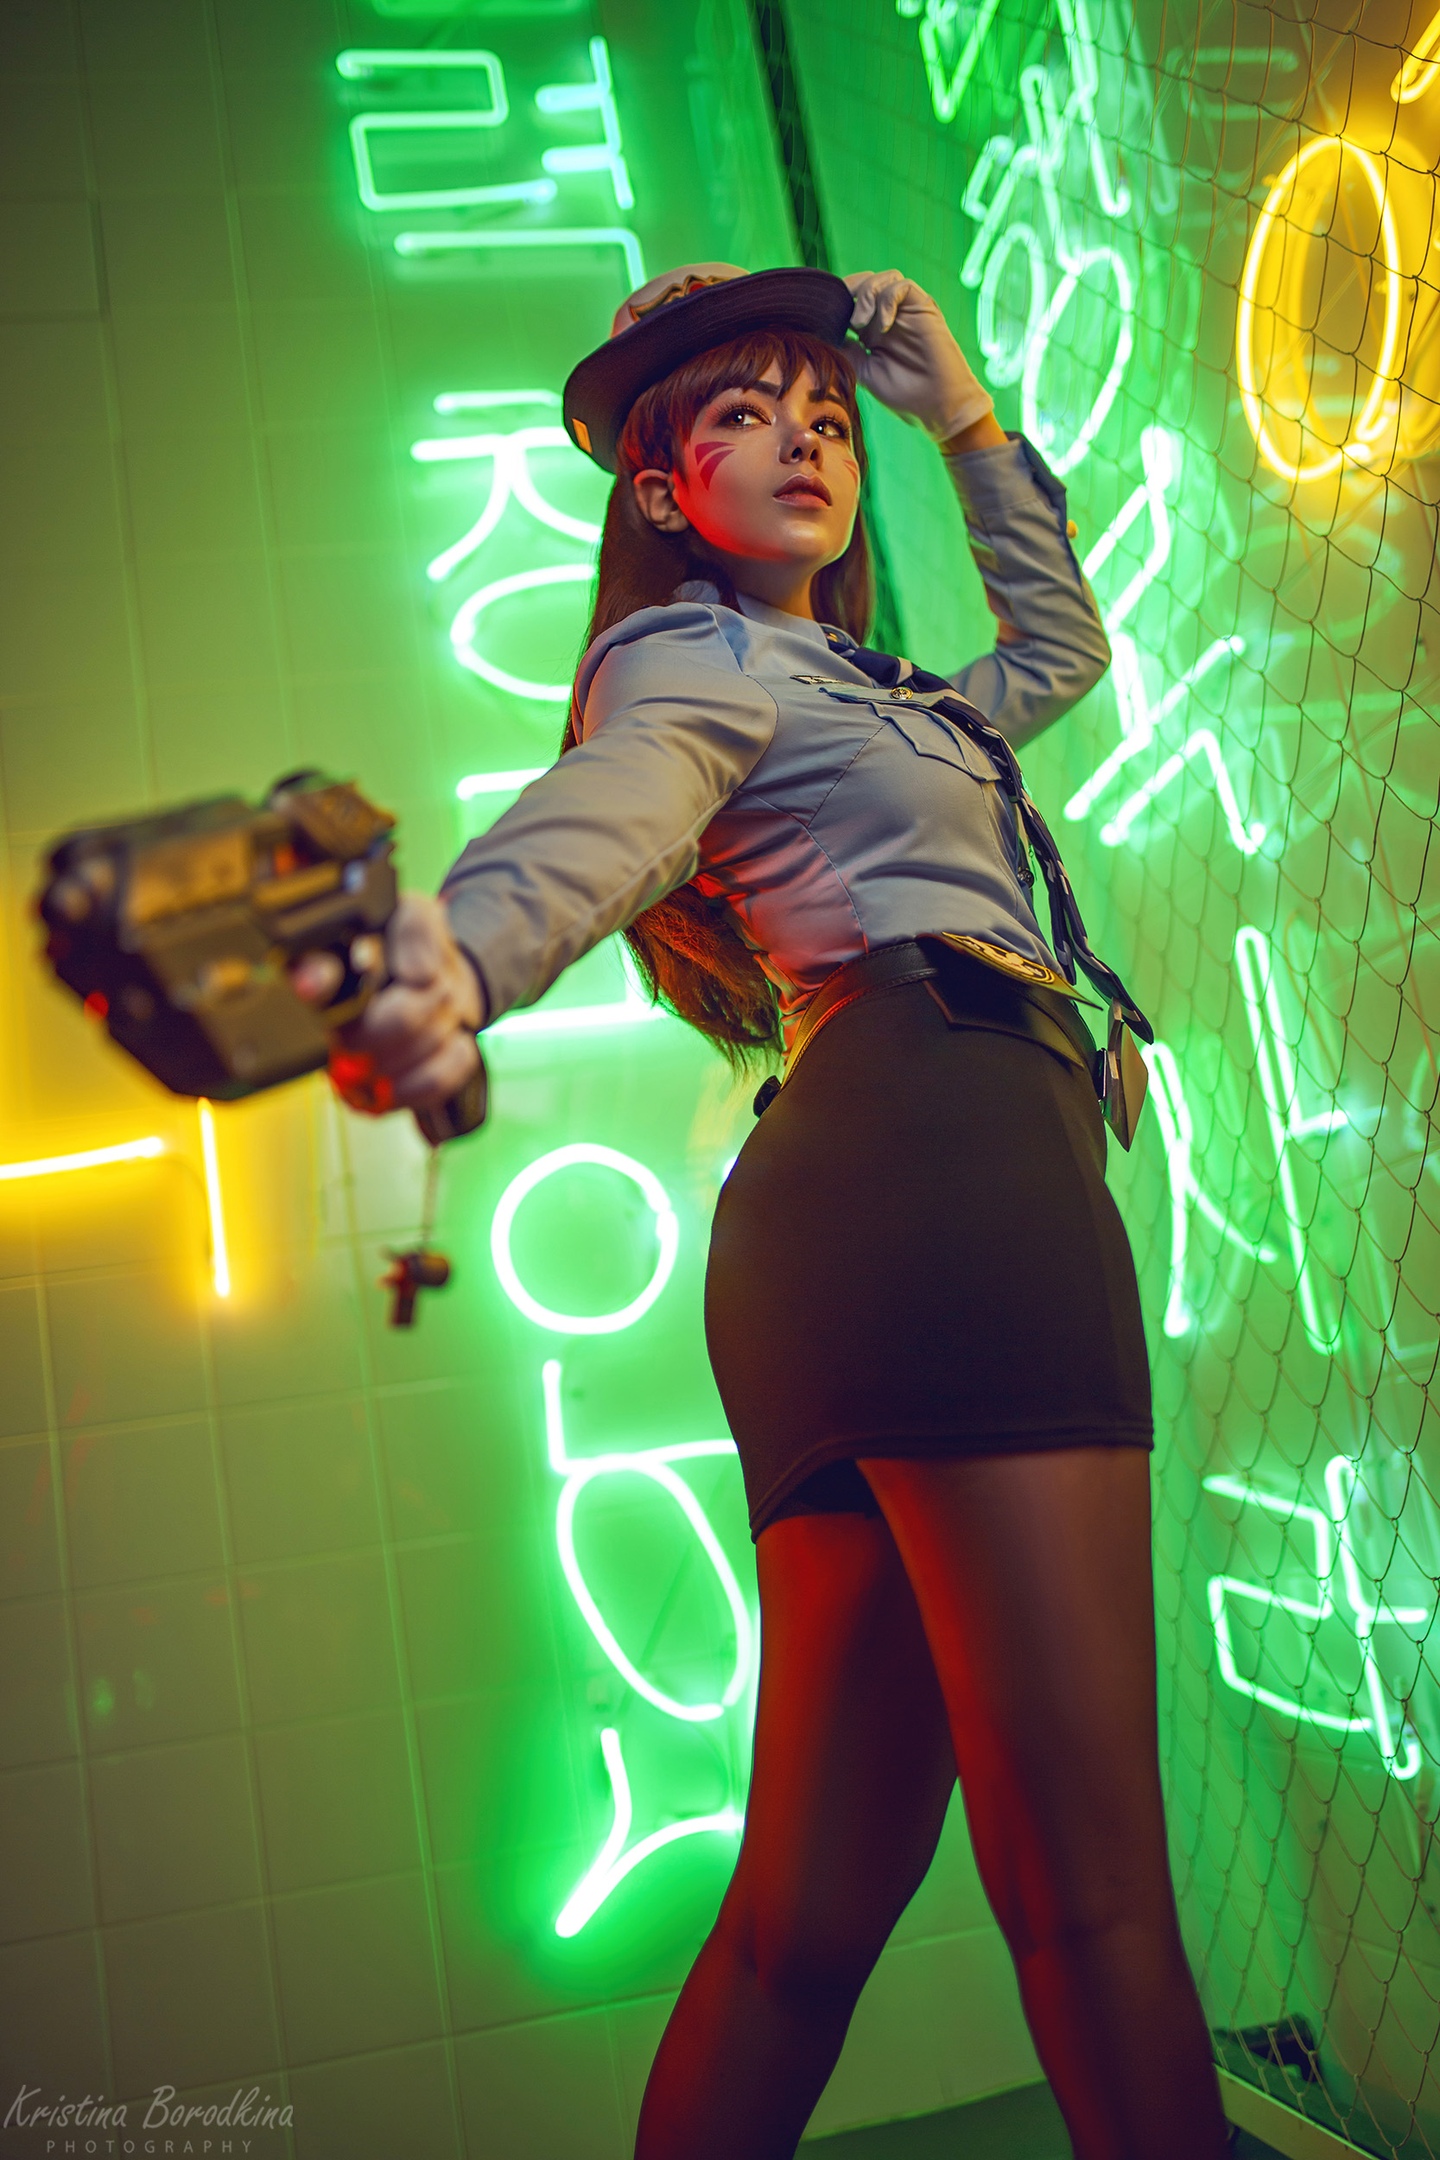 Kristina Borodkina Women Model Brunette D Va Overwatch Overwatch Cosplay Neon Lights Gun Pistol Vide 1440x2160